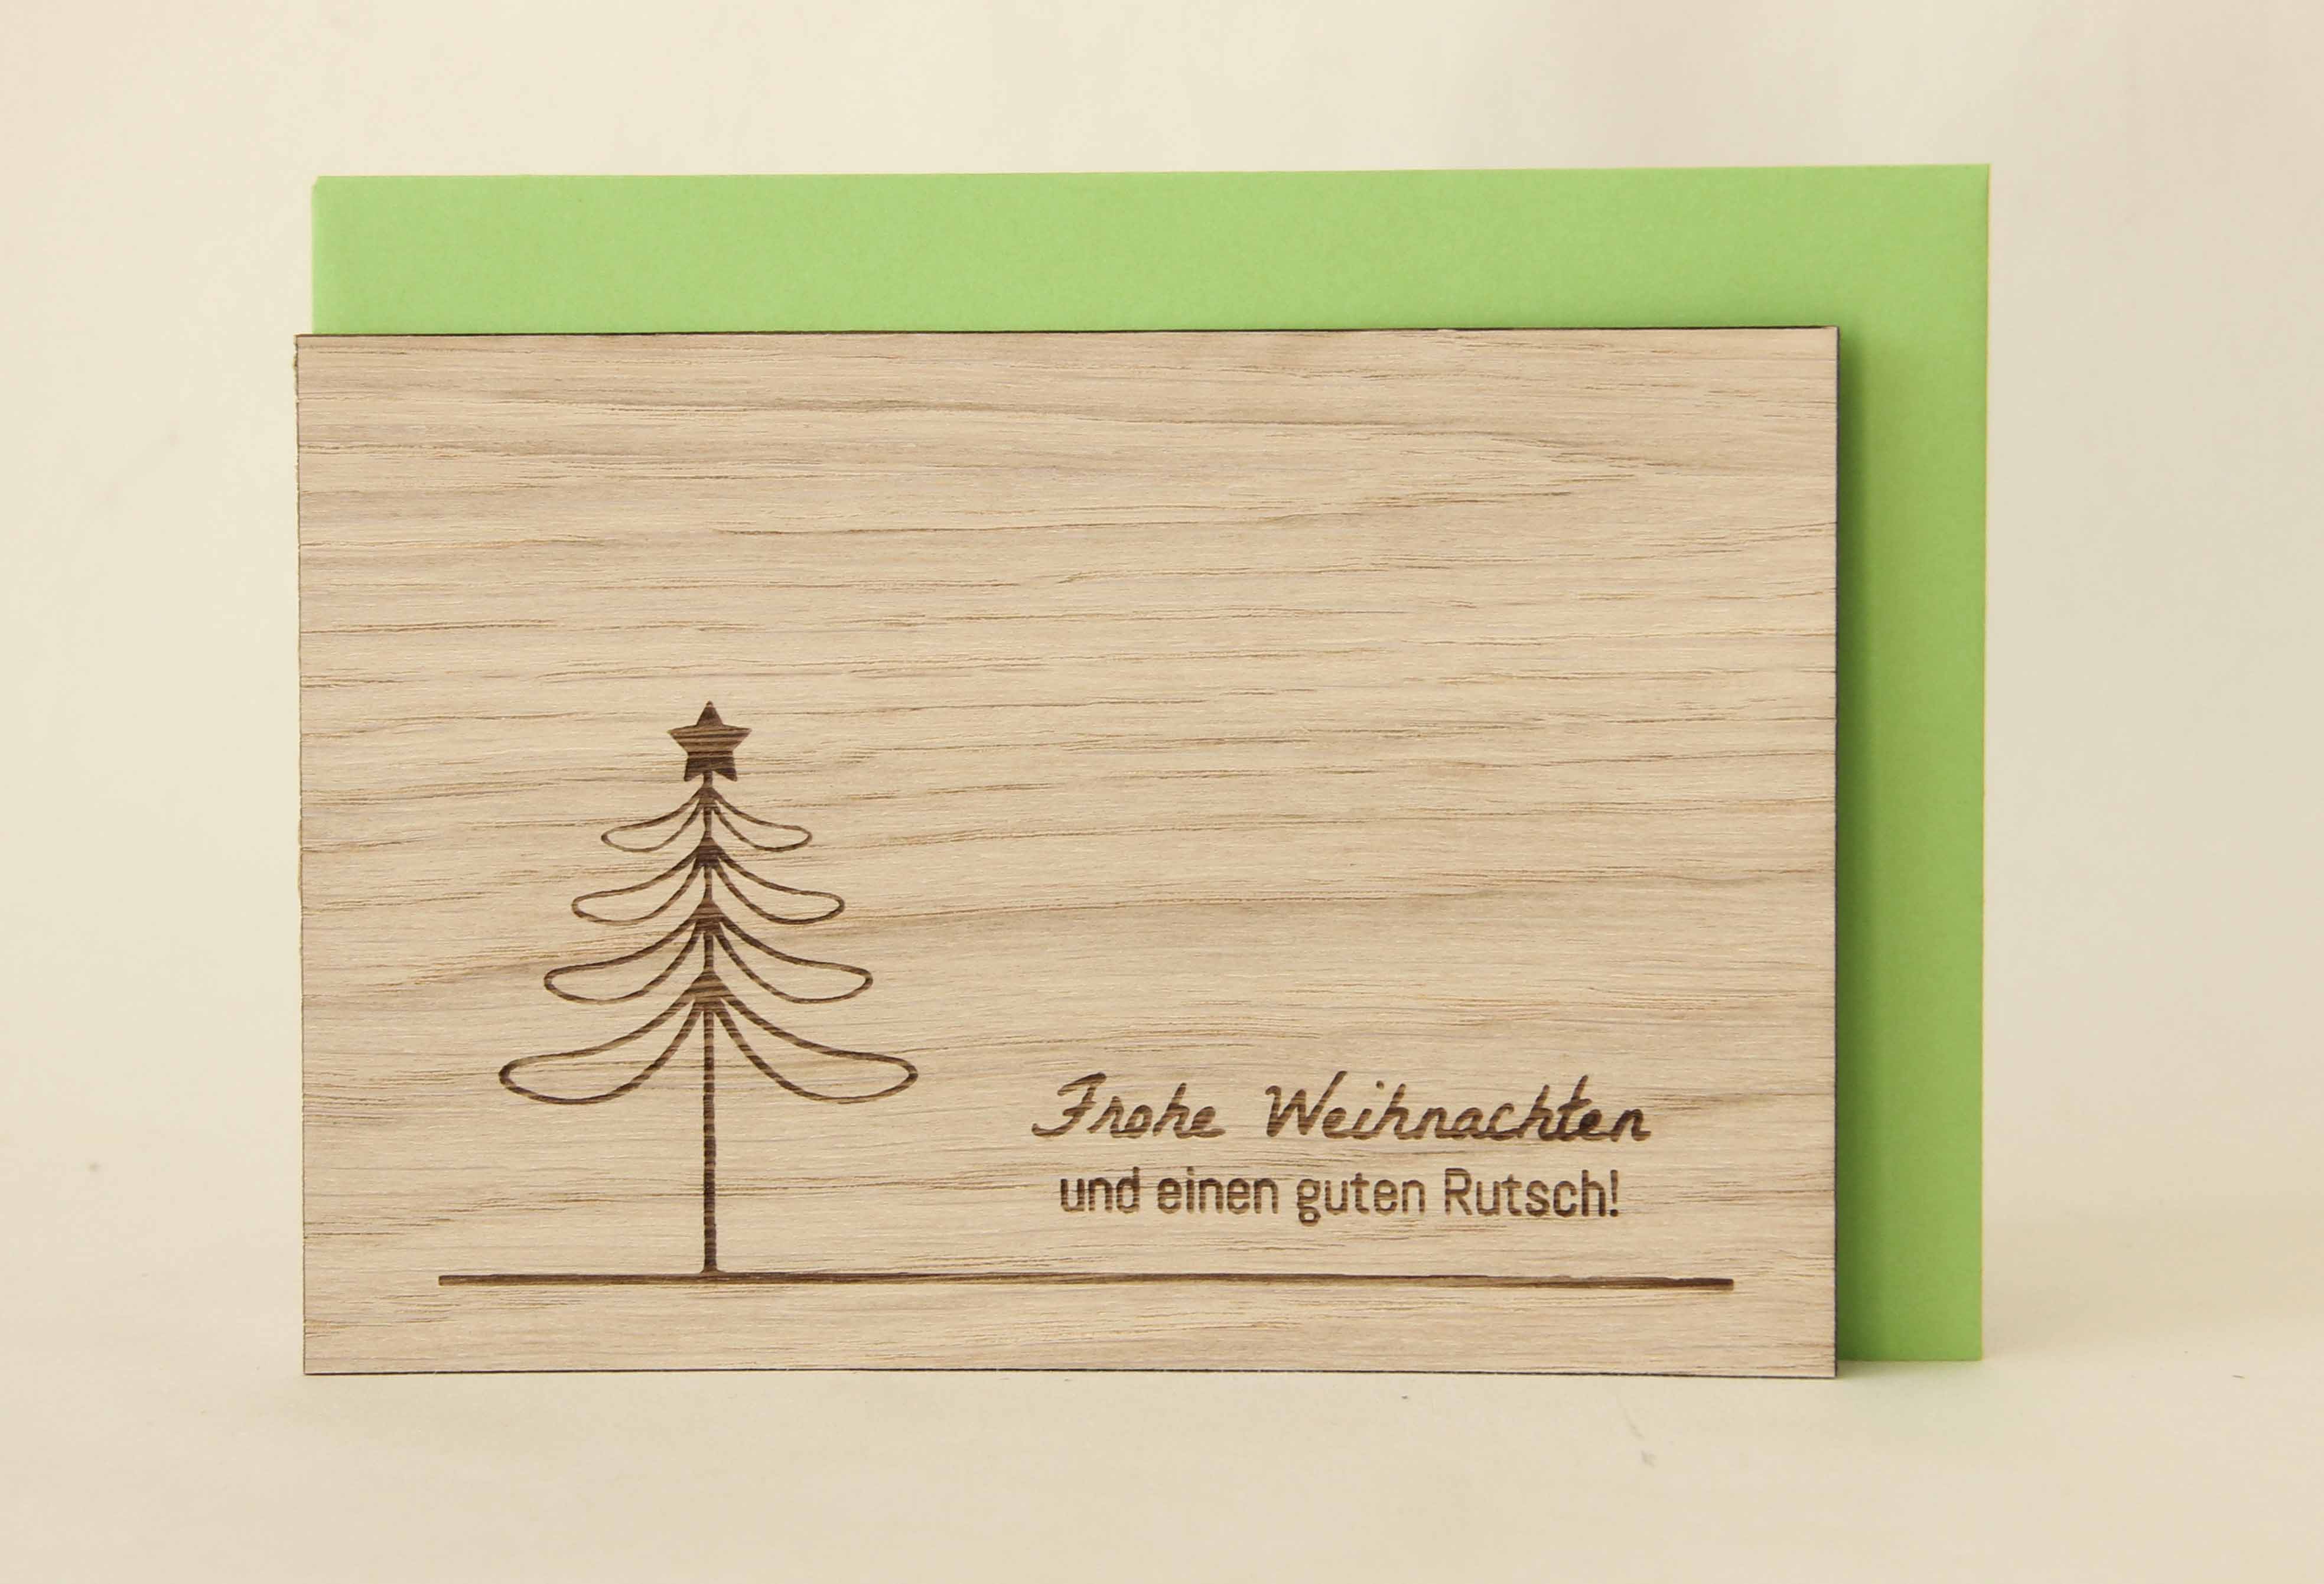 Holzgrusskarten - Weihnachtskarte "Frohe Weihnachten und einen guten Rutsch" aus Eiche, Weihnachtsbaum